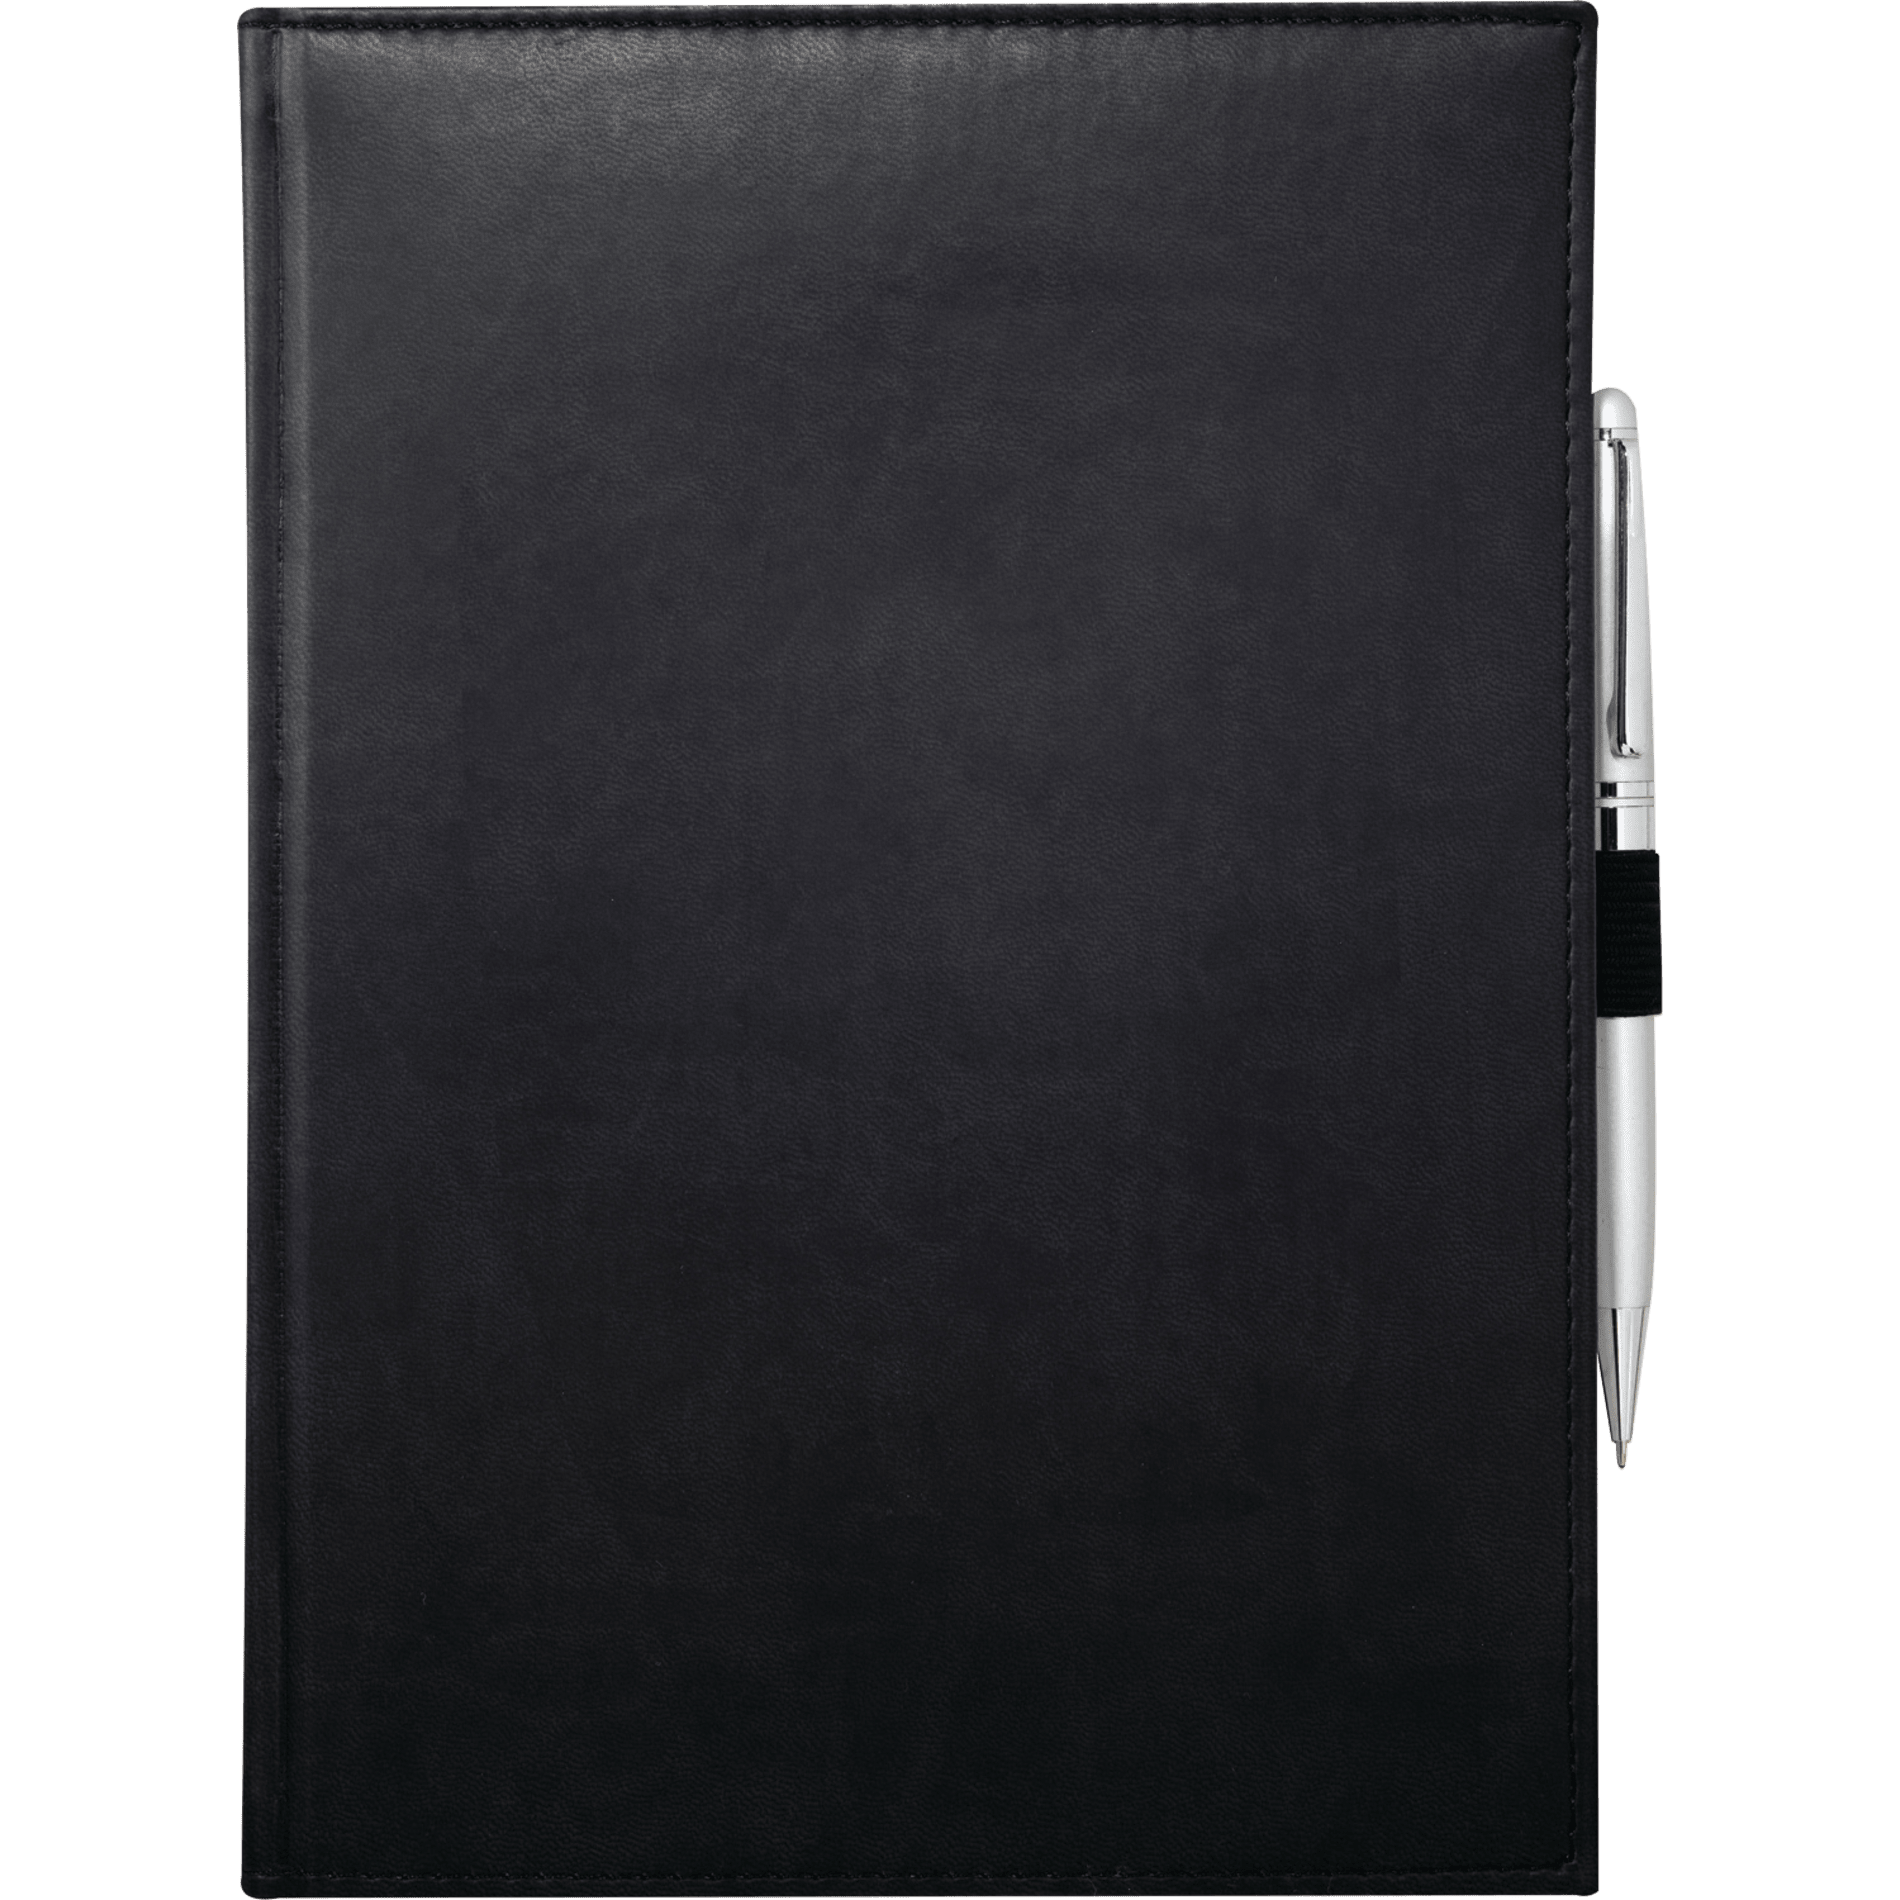 Pedova 2700-03 - 7" x 10" Large Bound JournalBook®